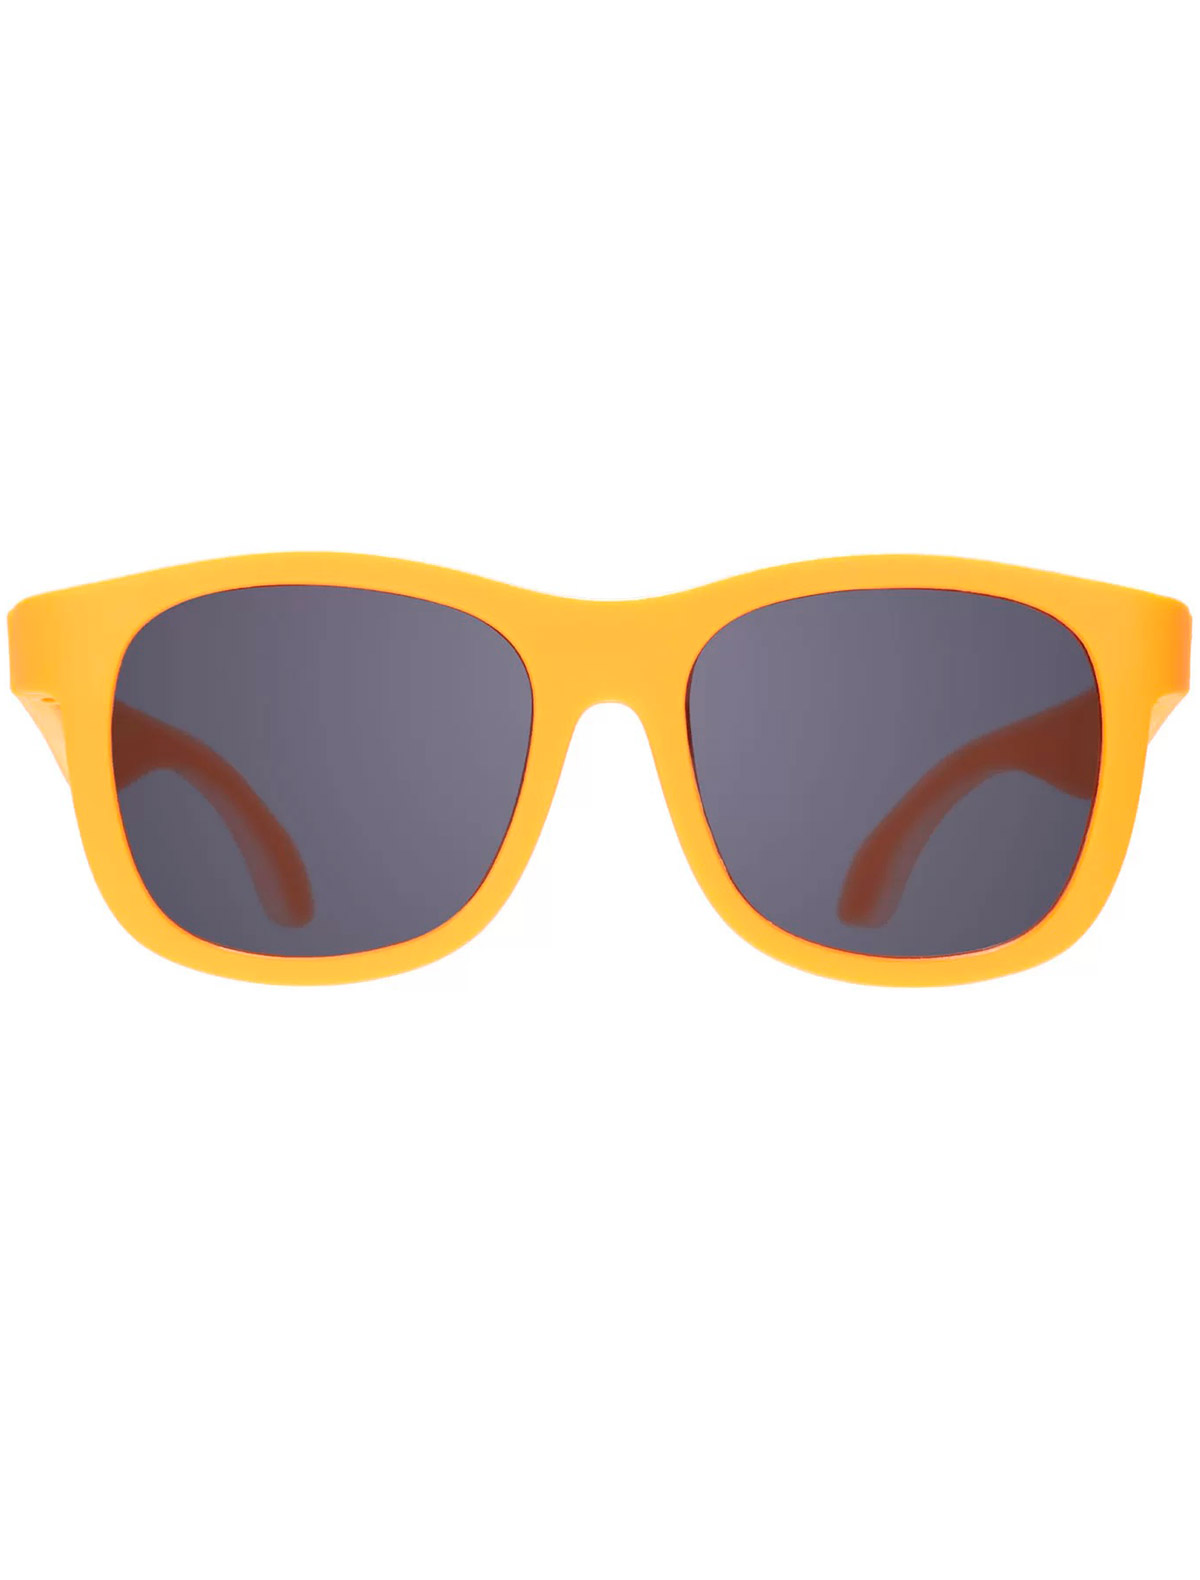 солнцезащитные очки babiators малыши, оранжевые